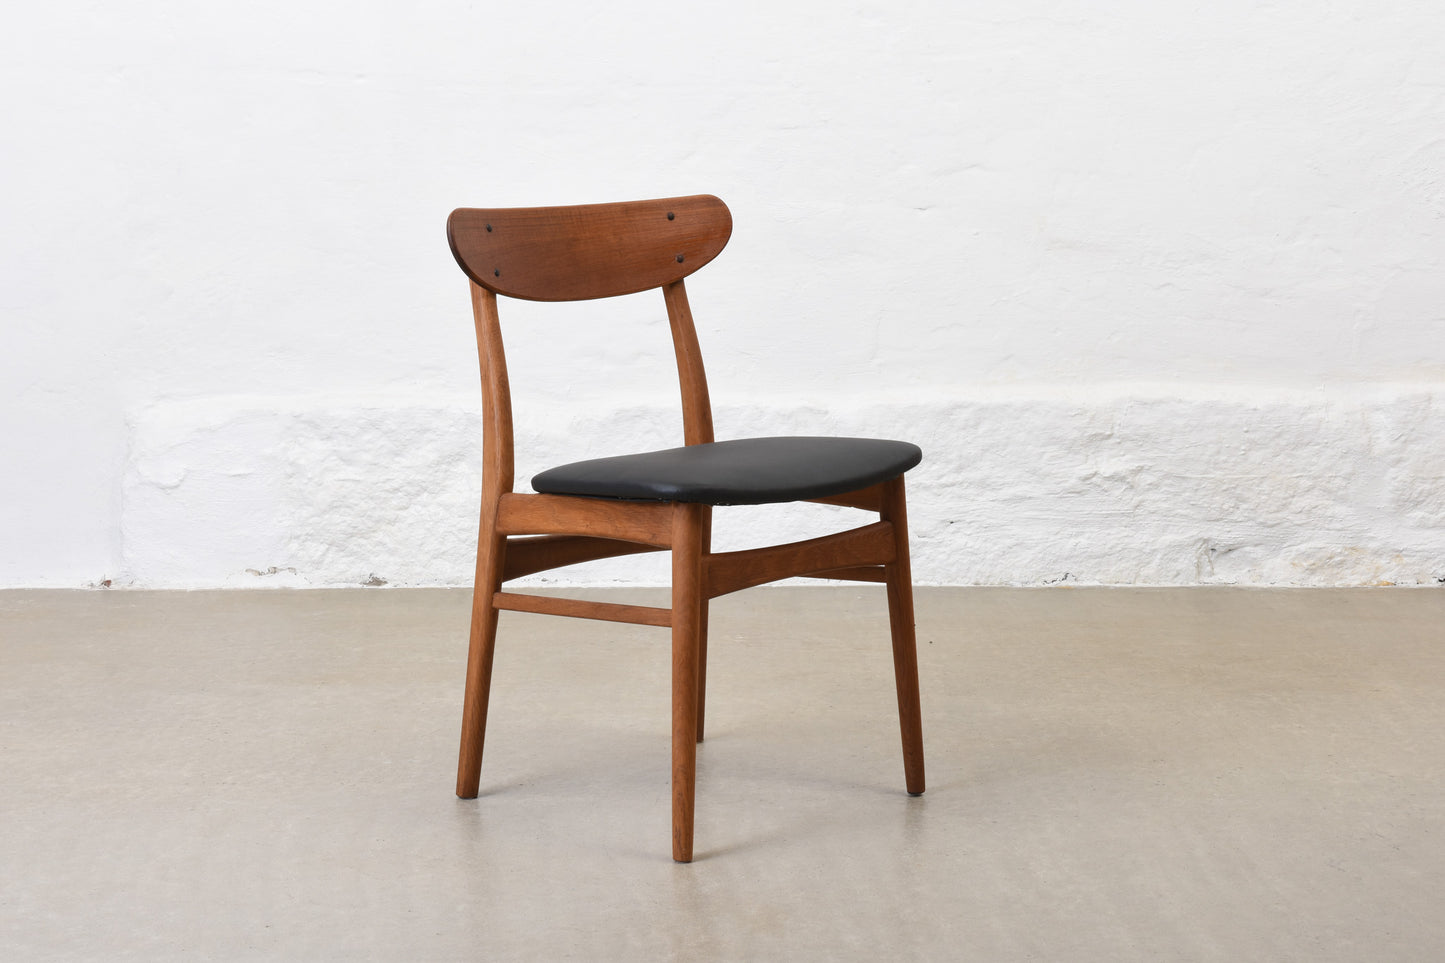 1960s teak + oak chair by Farstrup